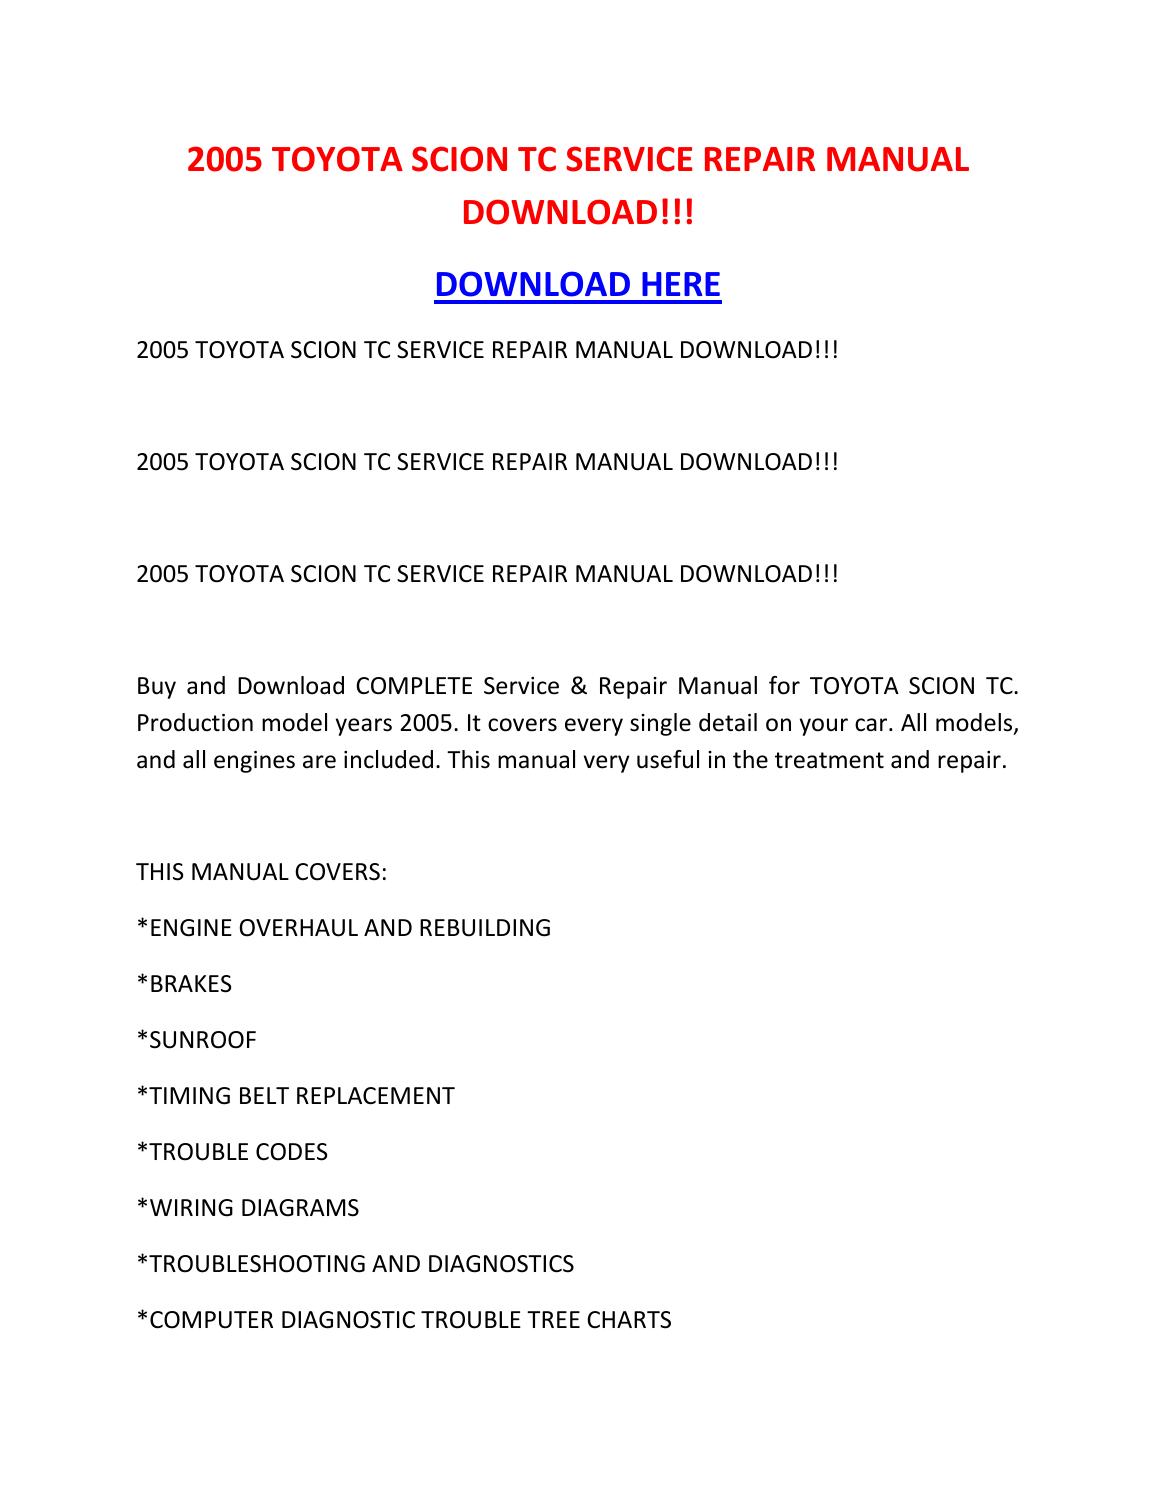 2005 Scion Tc Repair Manual Download